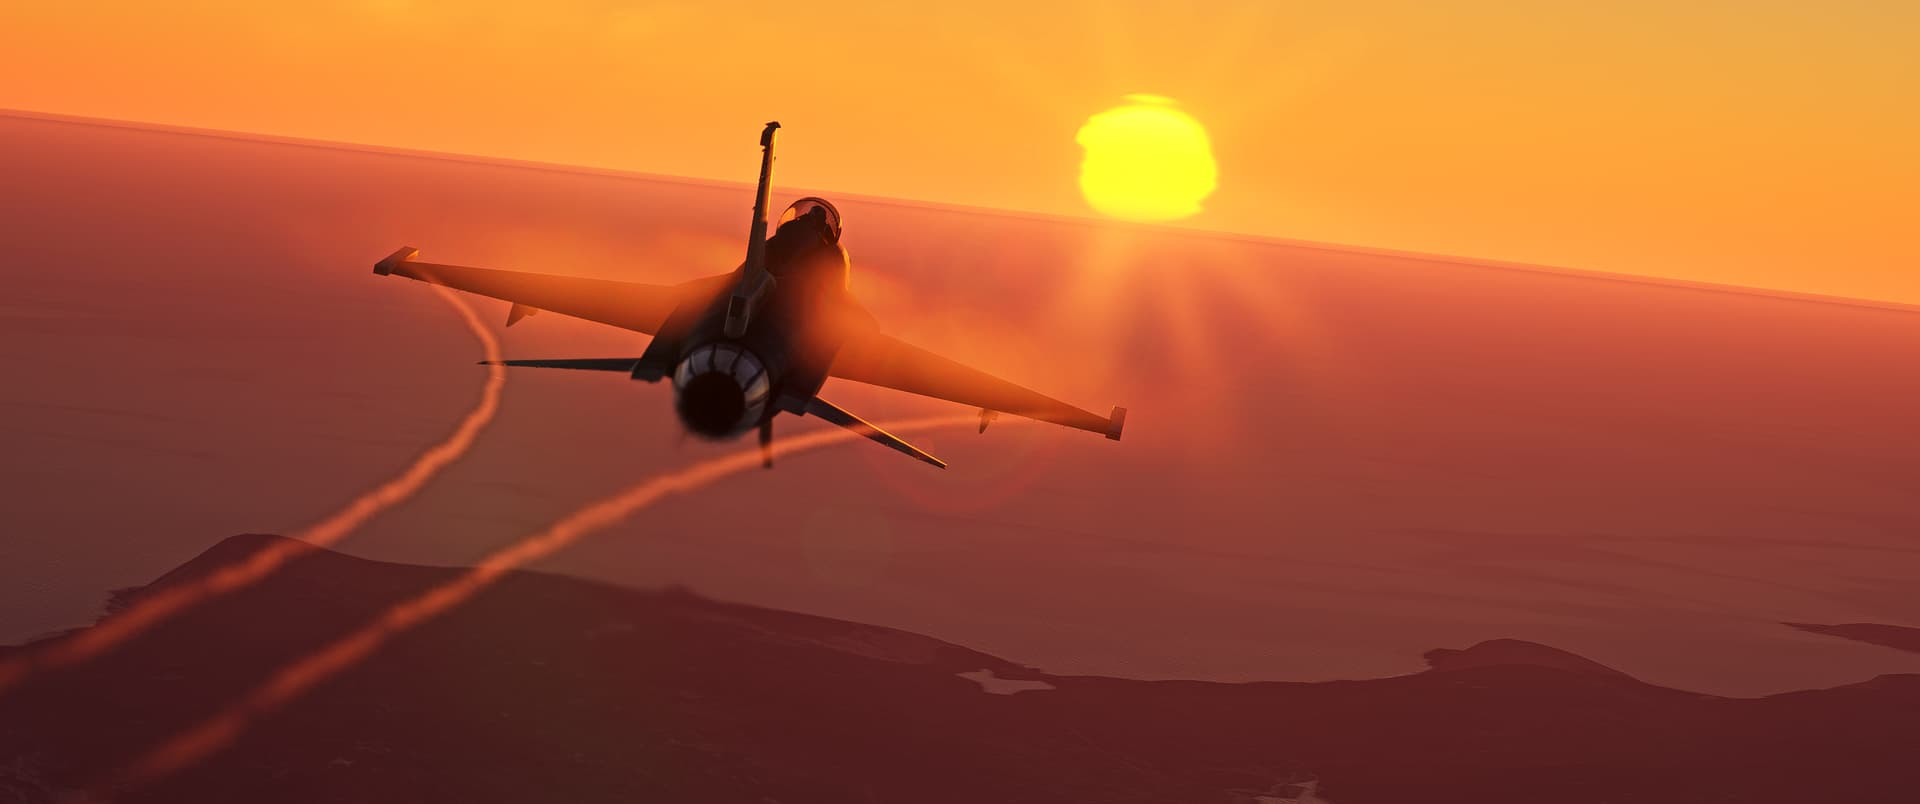 An F-16 cruises towards a sunset straight ahead